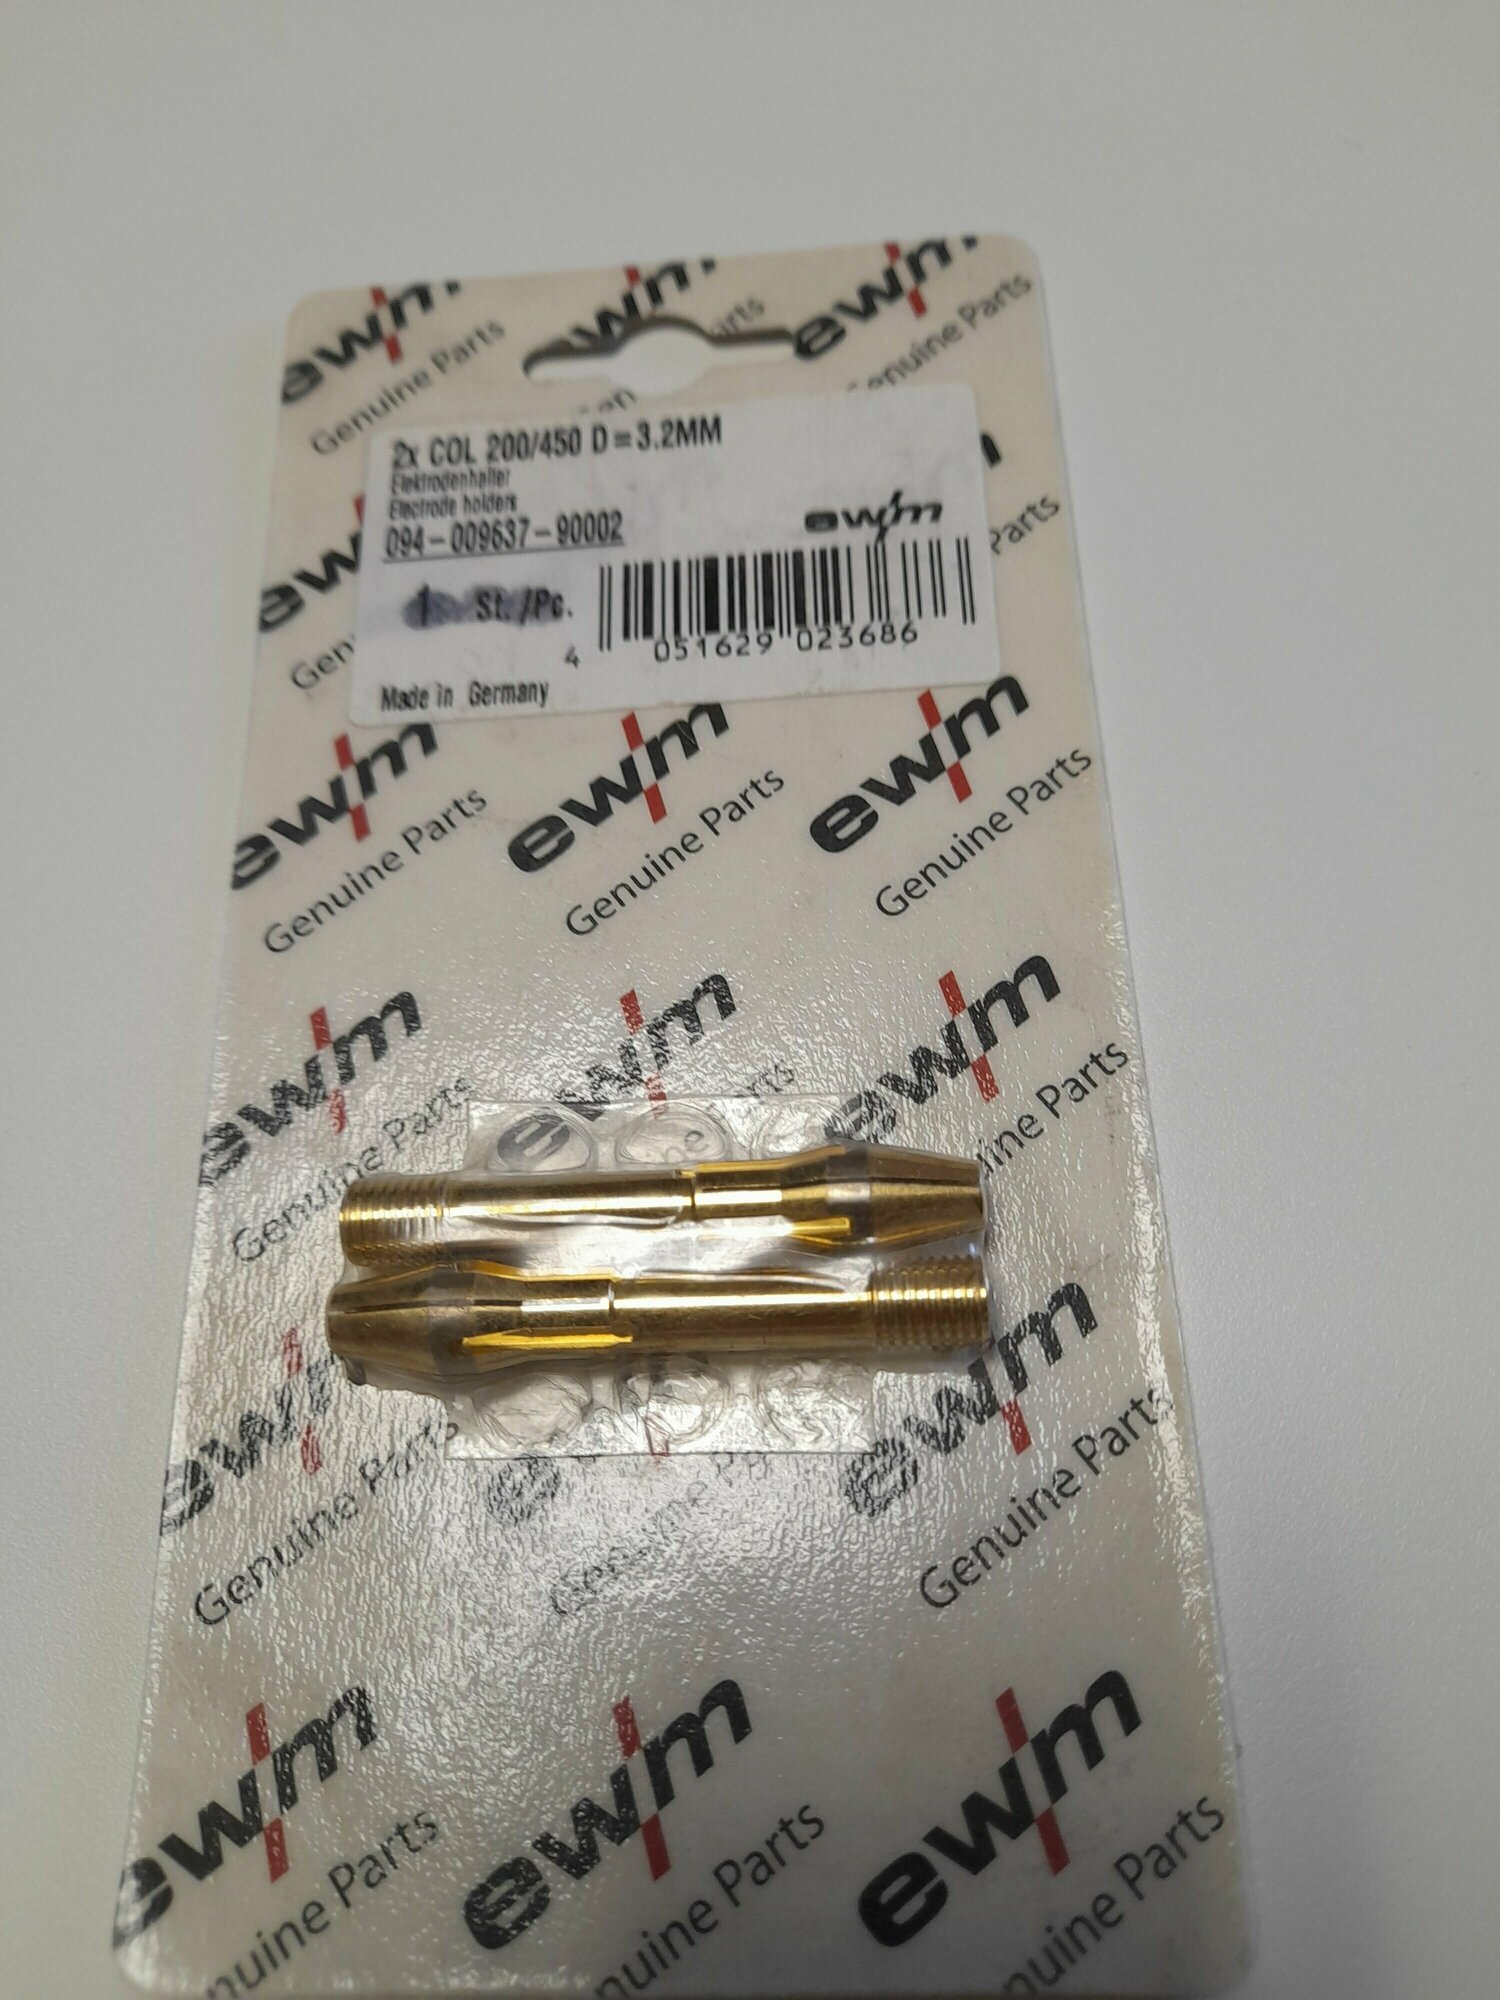 Цанга зажимная COL 200/450 (d-3.2 мм) EWM 094-009637-90002 (упаковка 1 цанга)